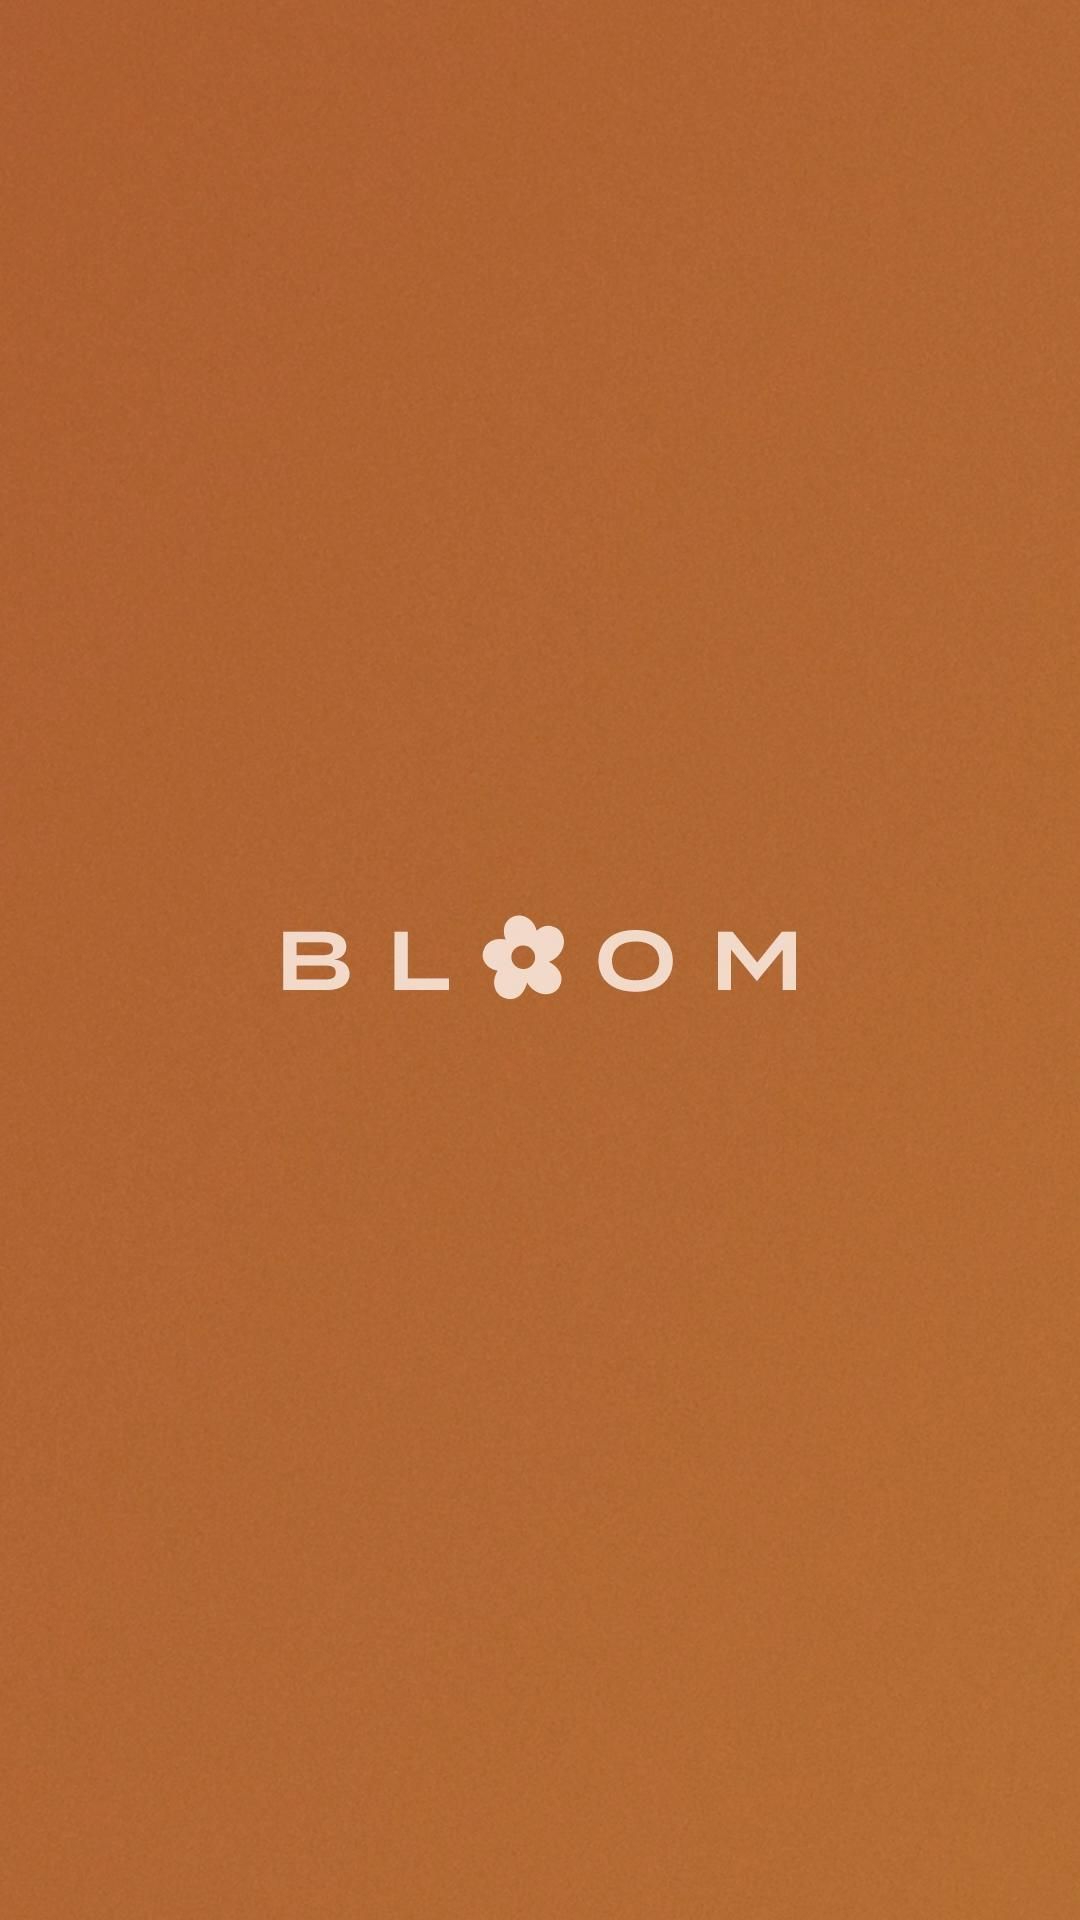 BLOOM flower shop minimalist modern logo design